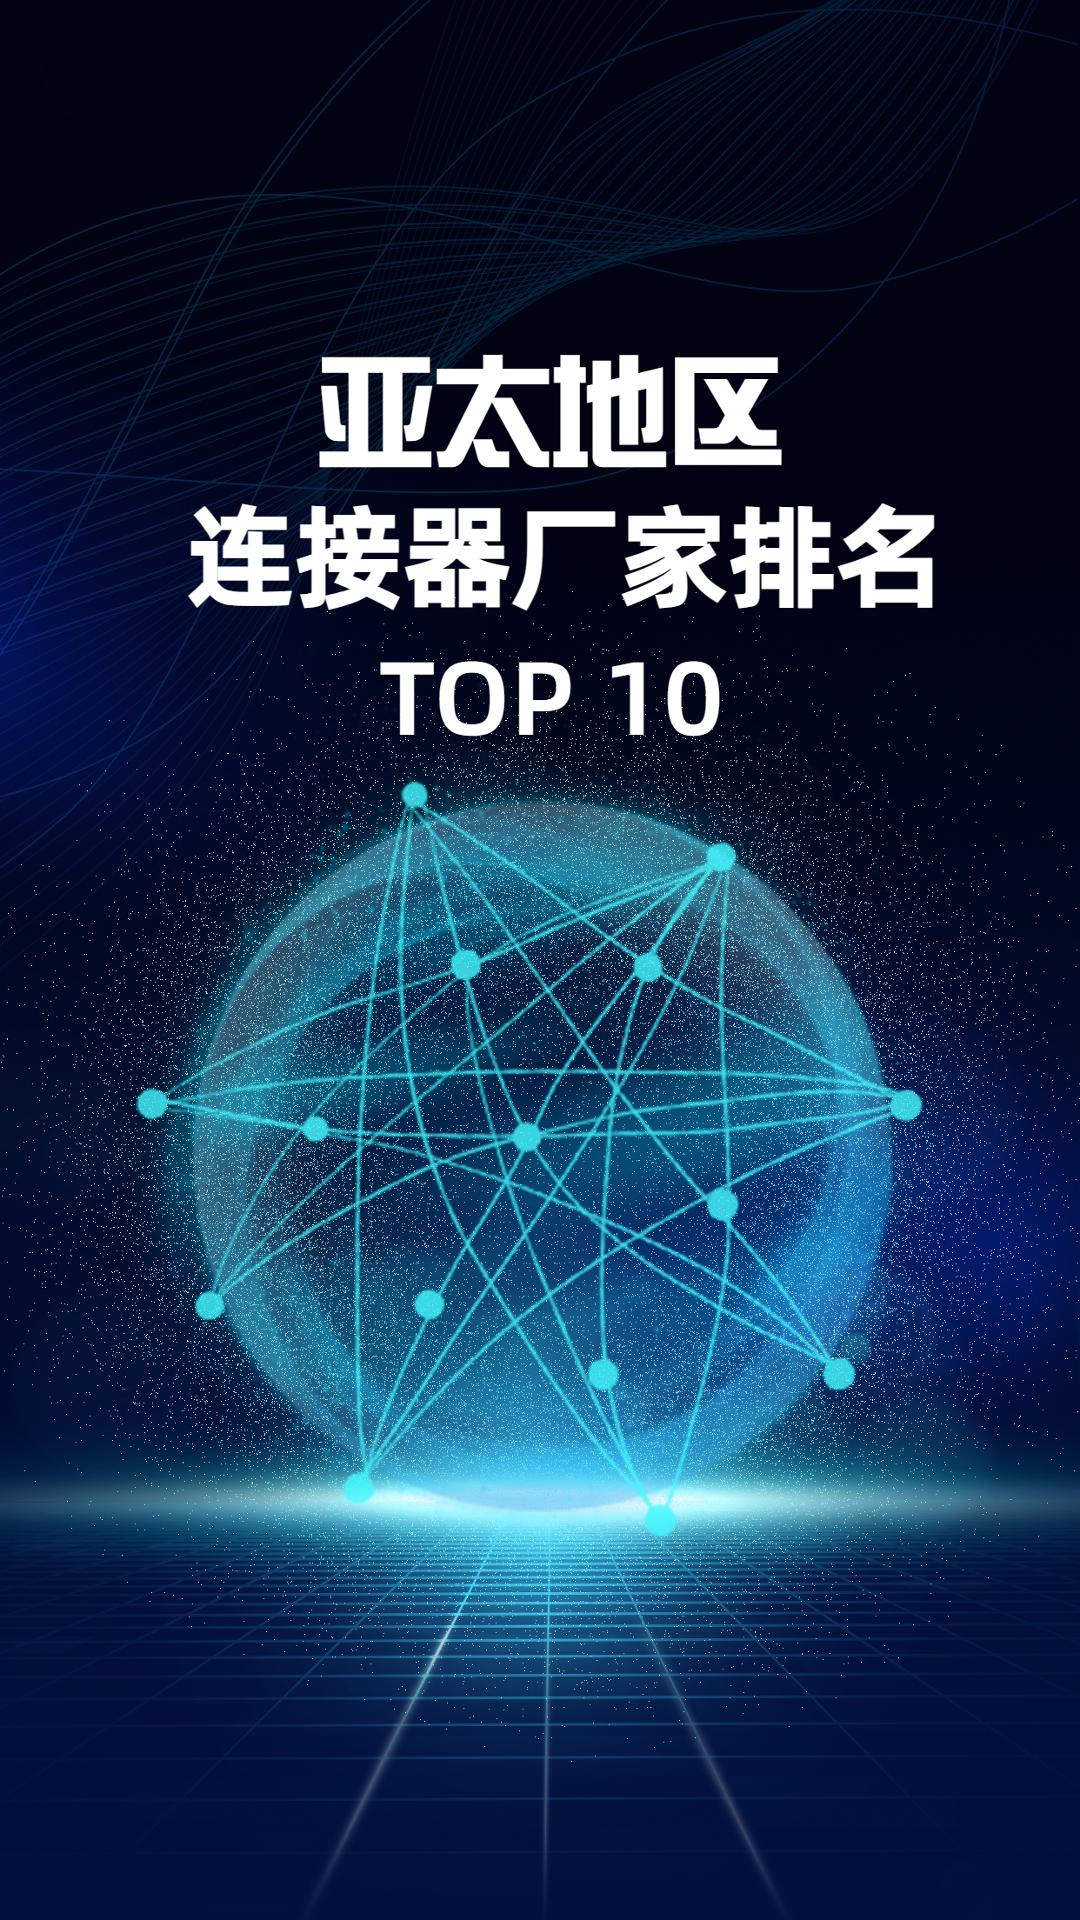 亚太地区连接器厂家TOP10